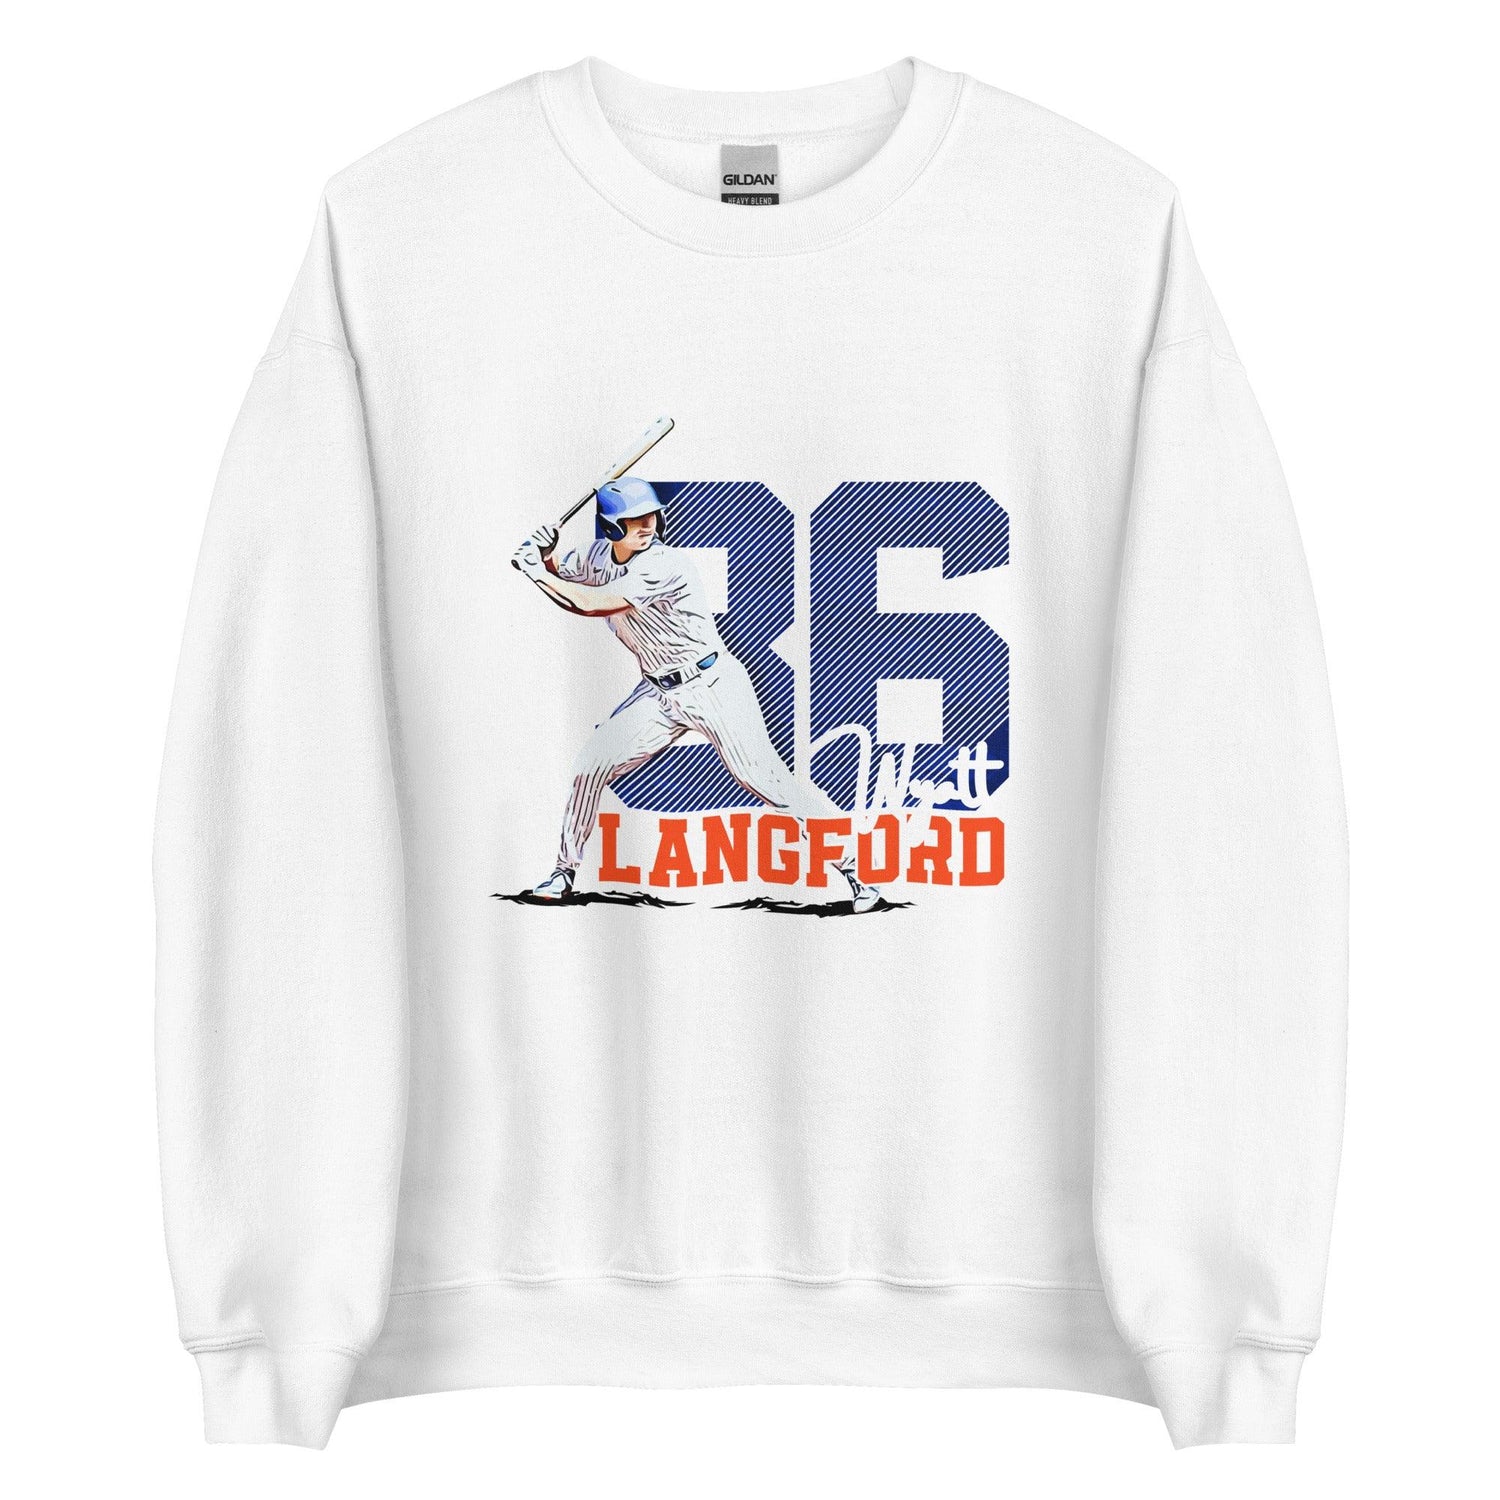 Wyatt Langford “Essential” Sweatshirt - Fan Arch